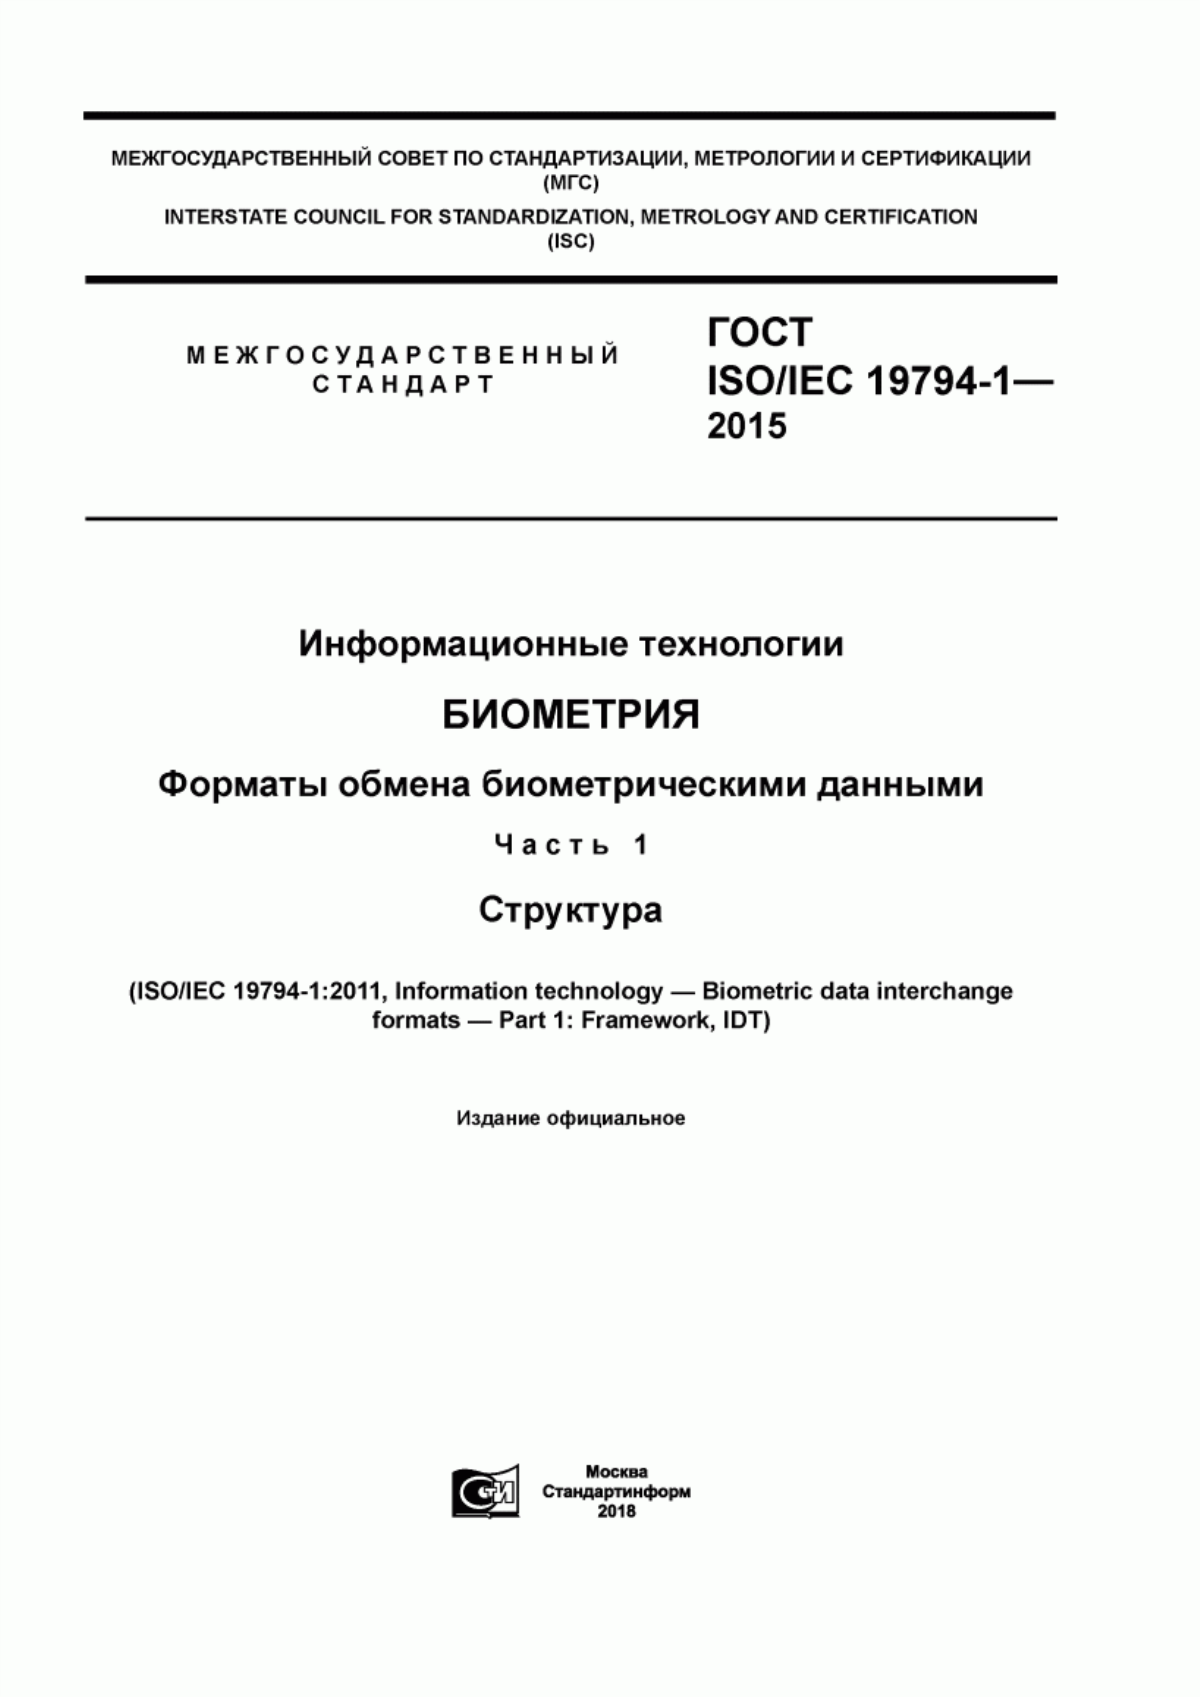 ГОСТ ISO/IEC 19794-1-2015 Информационные технологии. Биометрия. Форматы обмена биометрическими данными. Часть 1. Структура